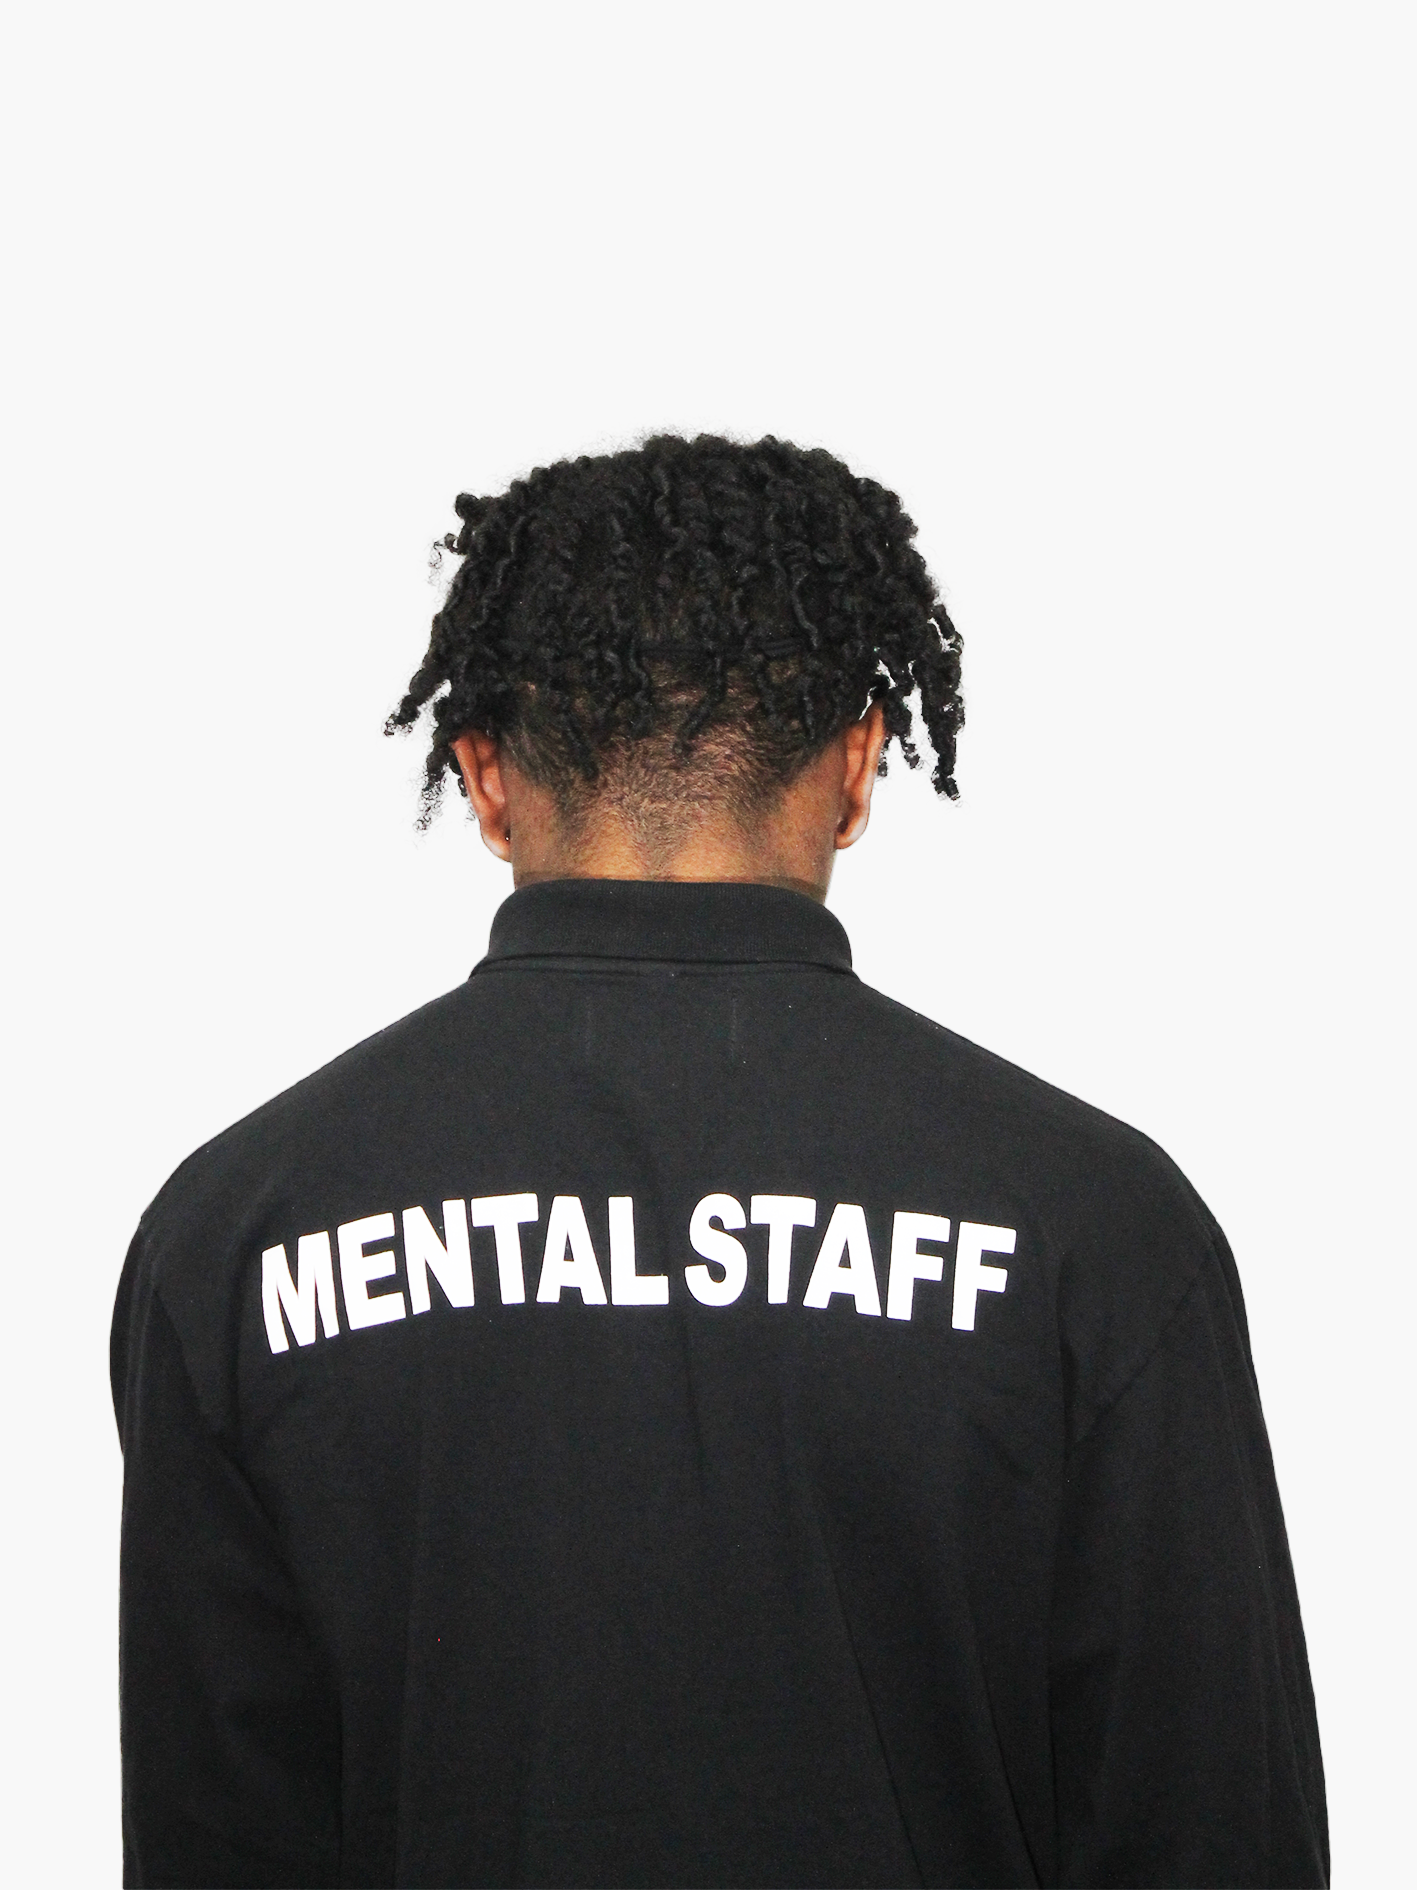 Mental Staff